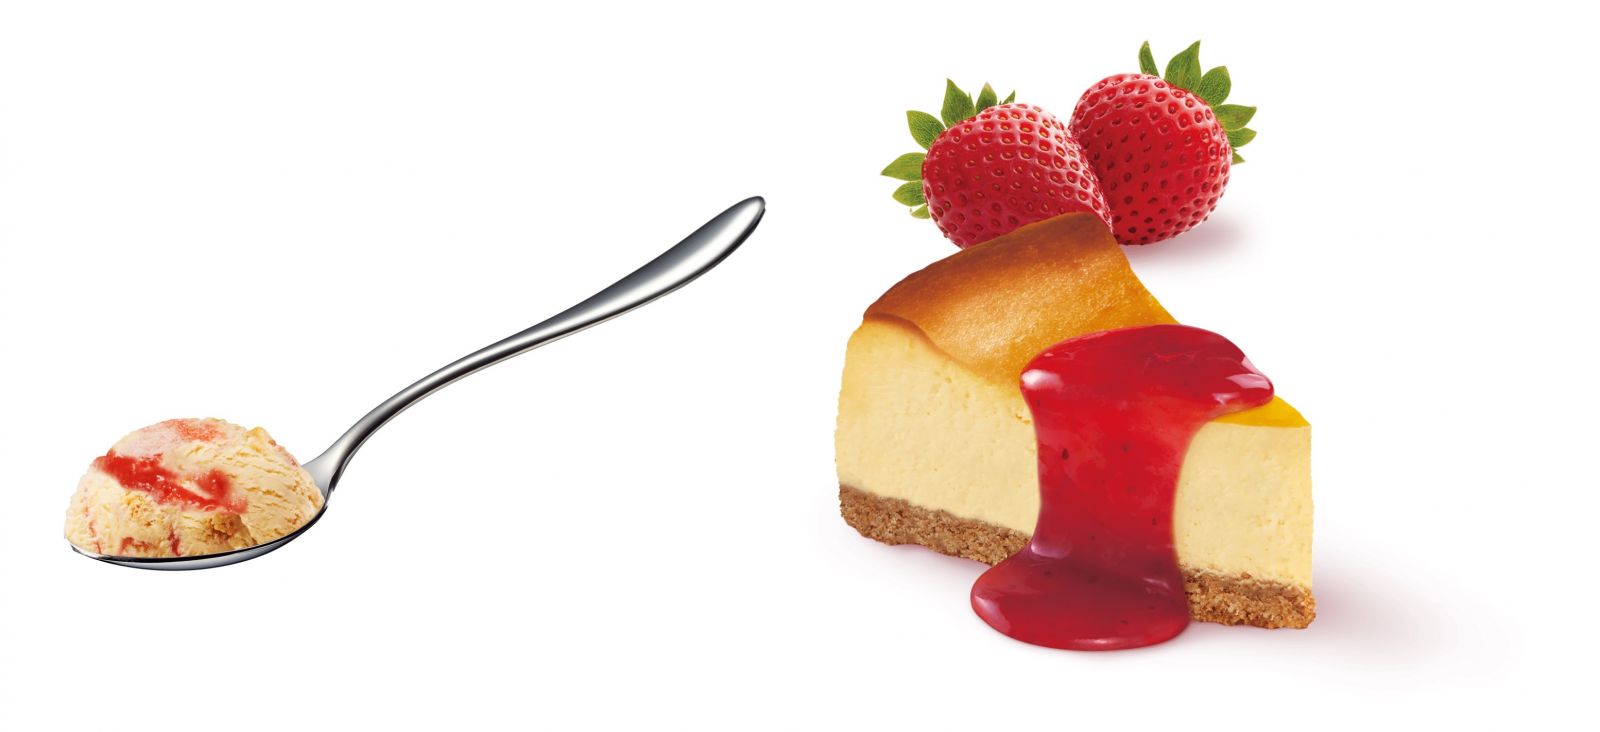 ミニカップ『ストロベリーチーズケーキ』の特徴